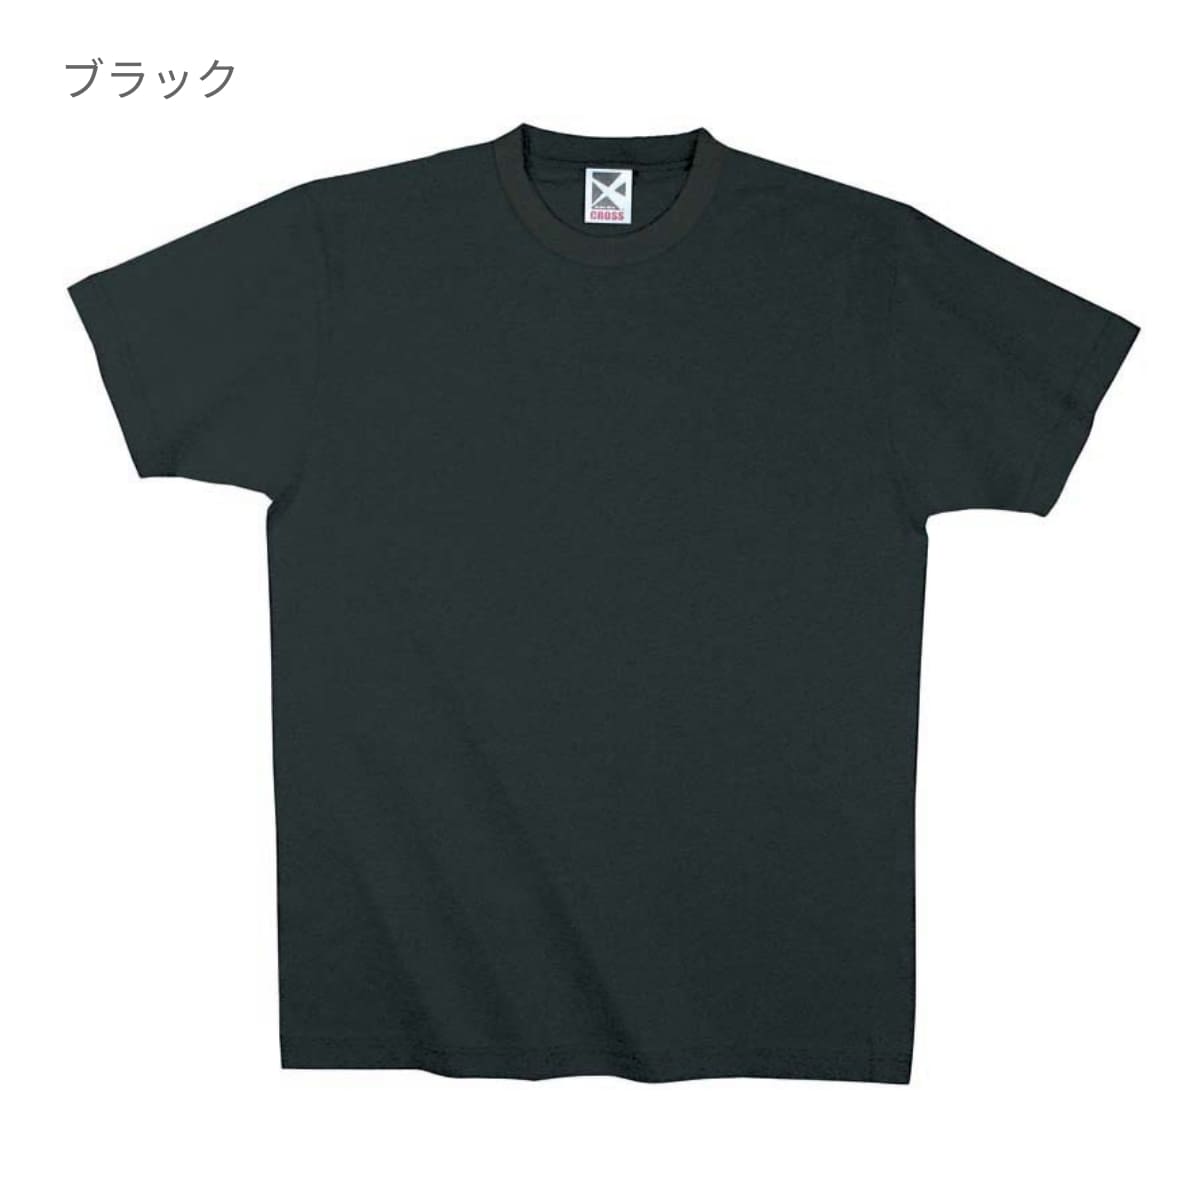 レギュラーコットンTシャツ | ビッグサイズ | 1枚 | CR1102 | シアンブルー